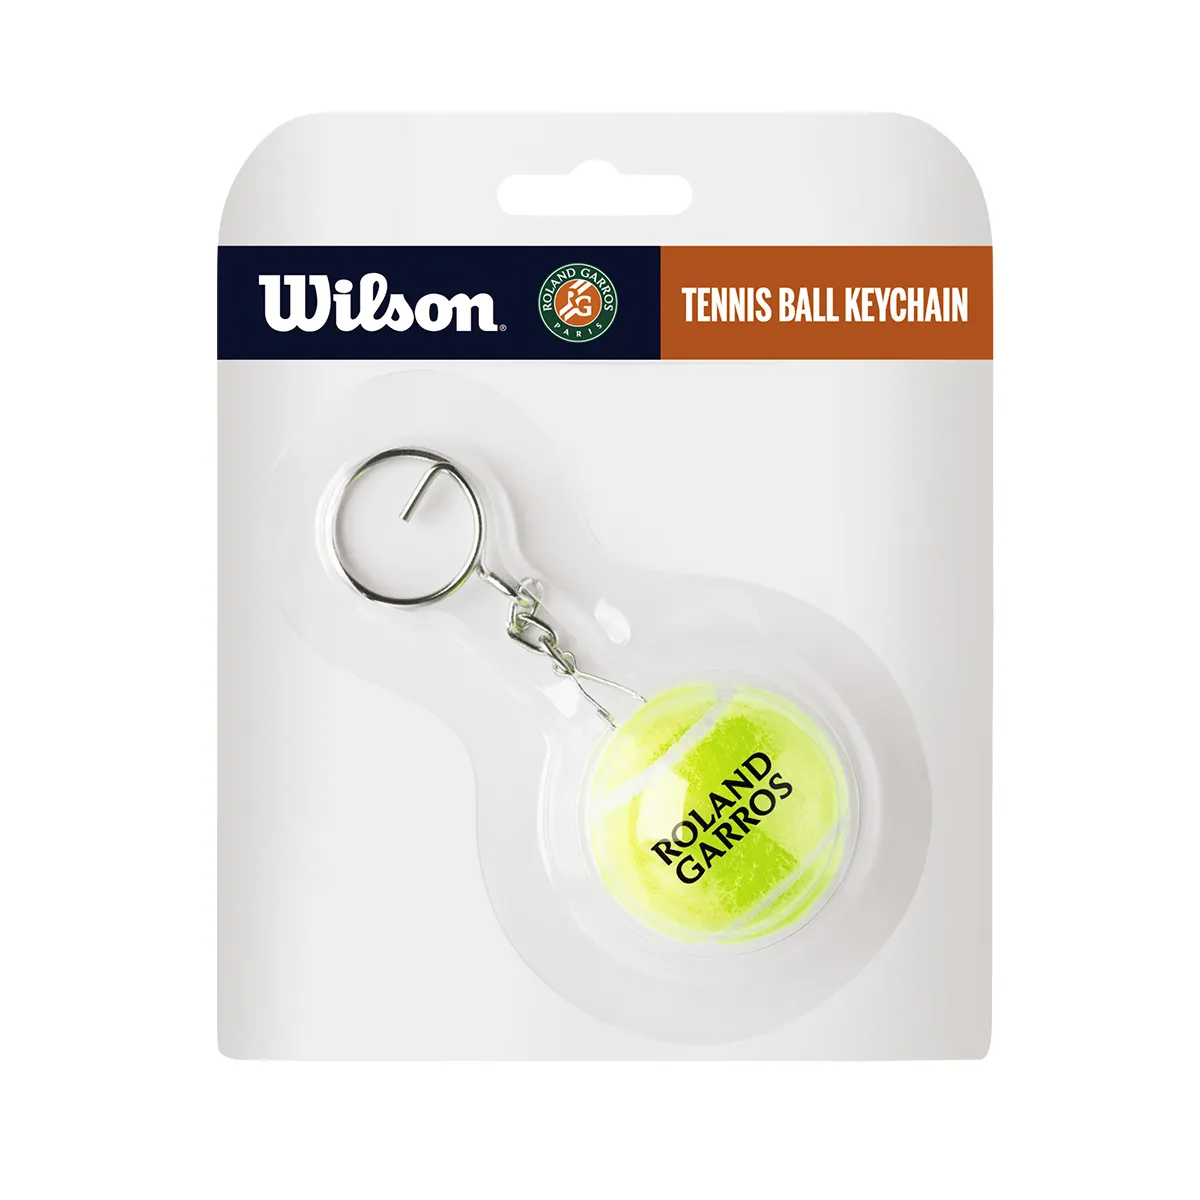 Porte-clés balle de tennis Wilson Roland Garros